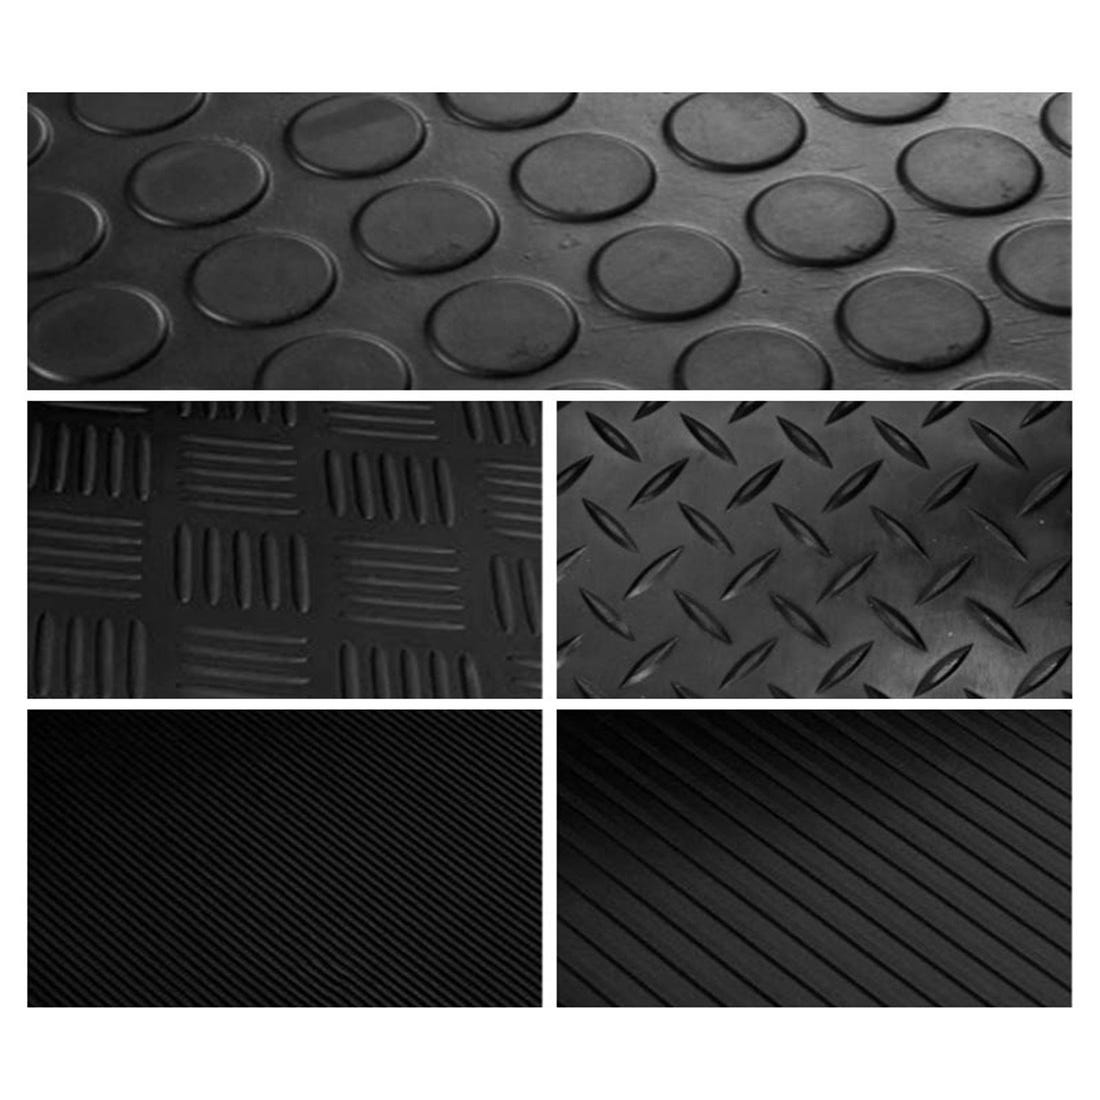 Suelo Goma| Ancho 1m/1mm| Composición Caucho| Suelo Antideslizante| Suelo  Protector| Suelo Caucho| Diseño Botones| Gris